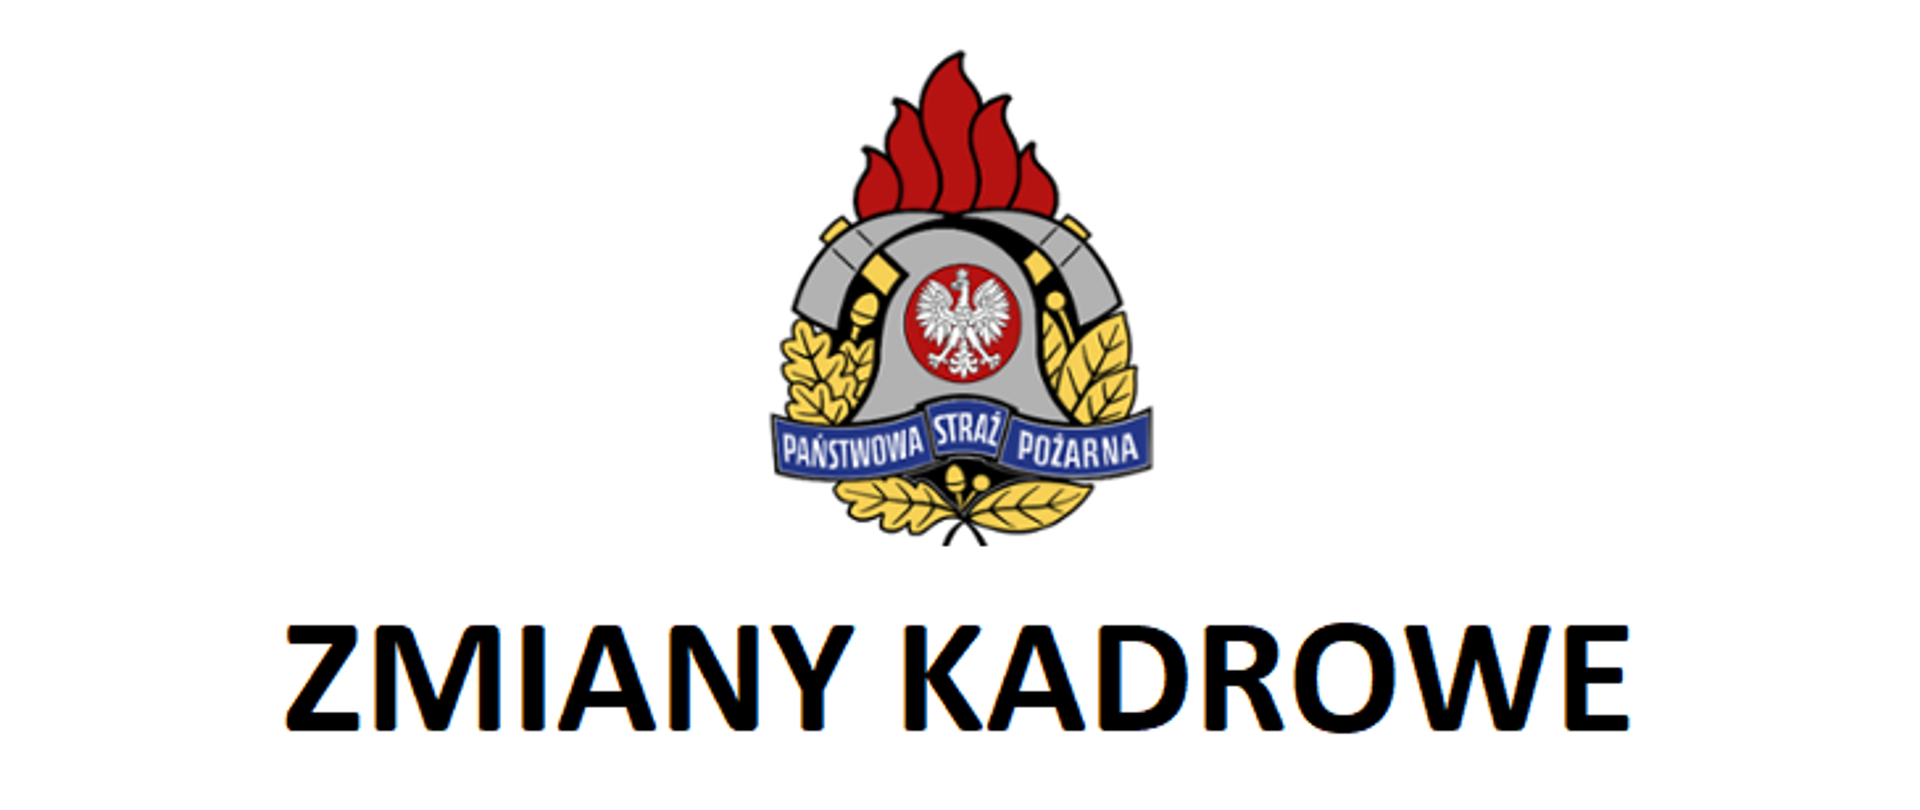 Zdjęcie przedstawia logo Państwowej Straży Pożarnej, pod logo napis "zmiany kadrowe"